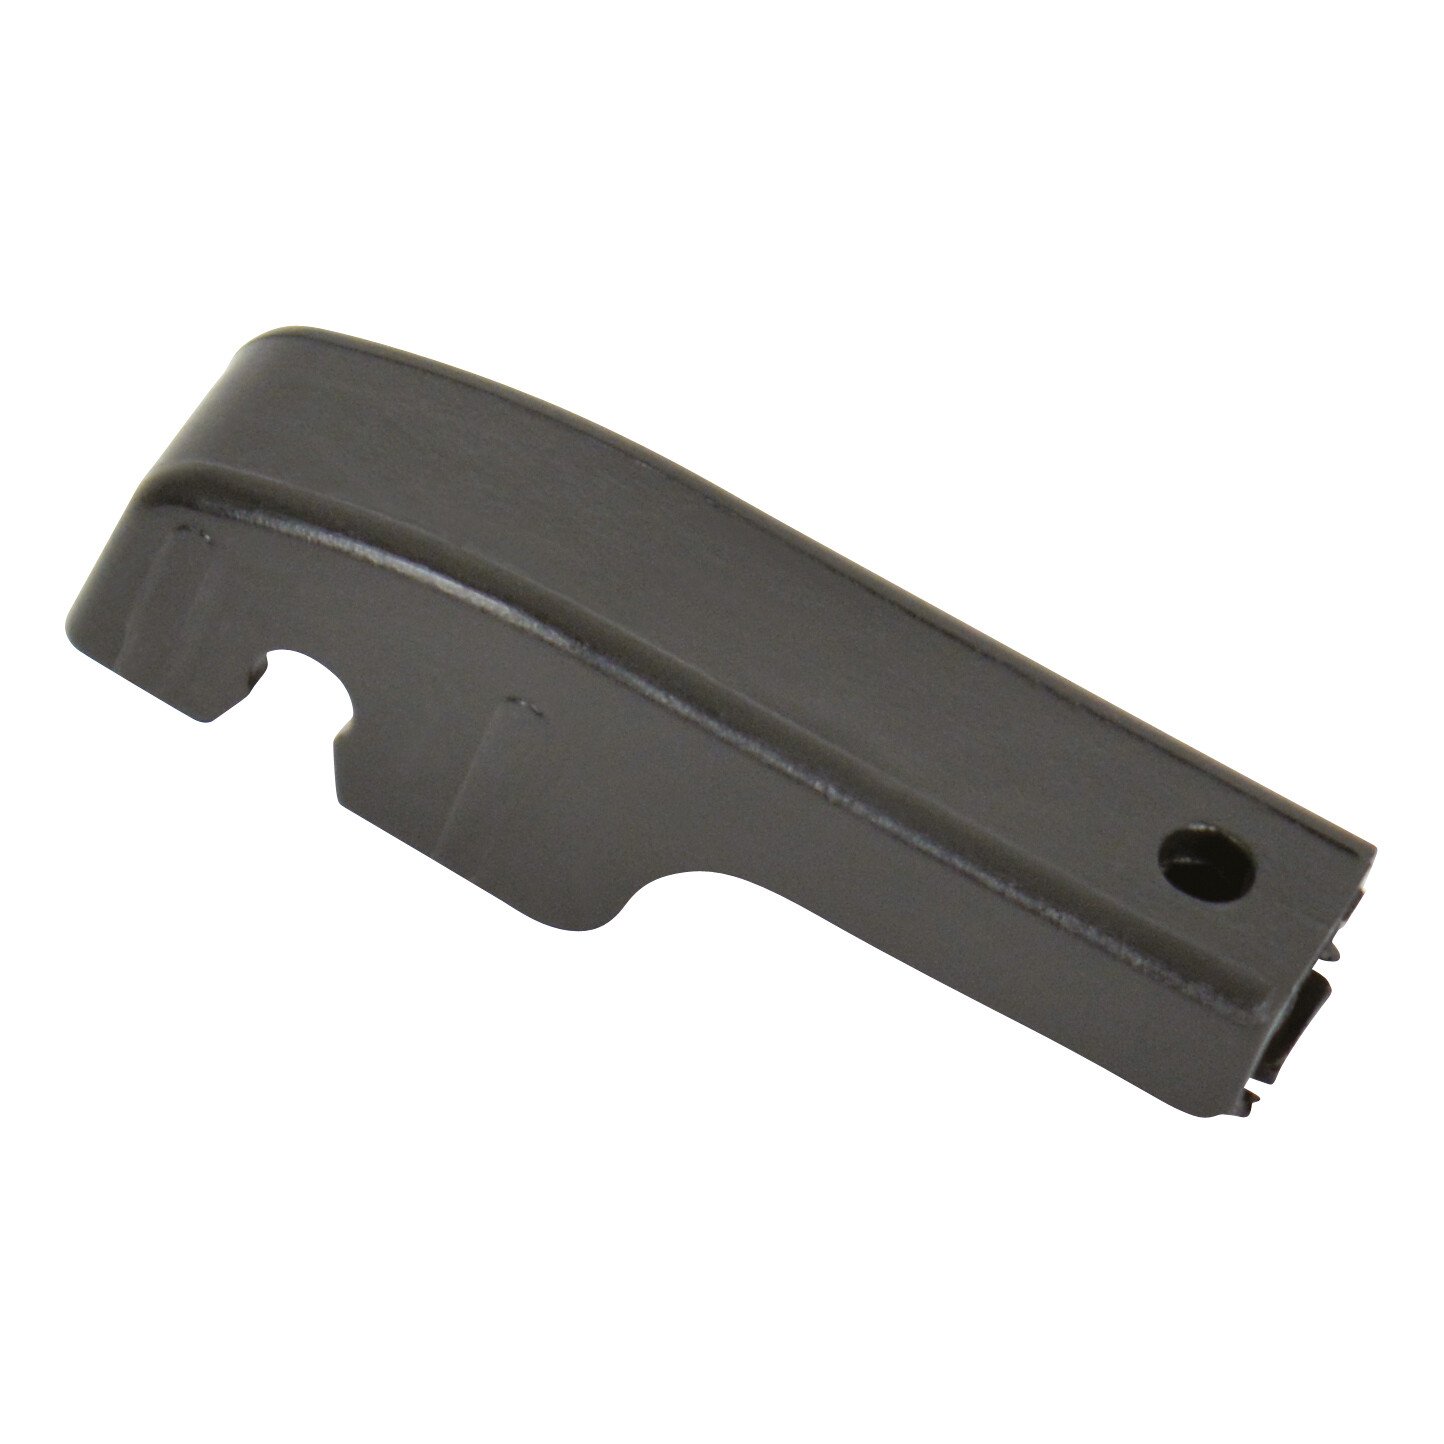 NXT Aero-Comfort wiper blade 9 adaptors 38cm (15“) - 1 pcs thumb